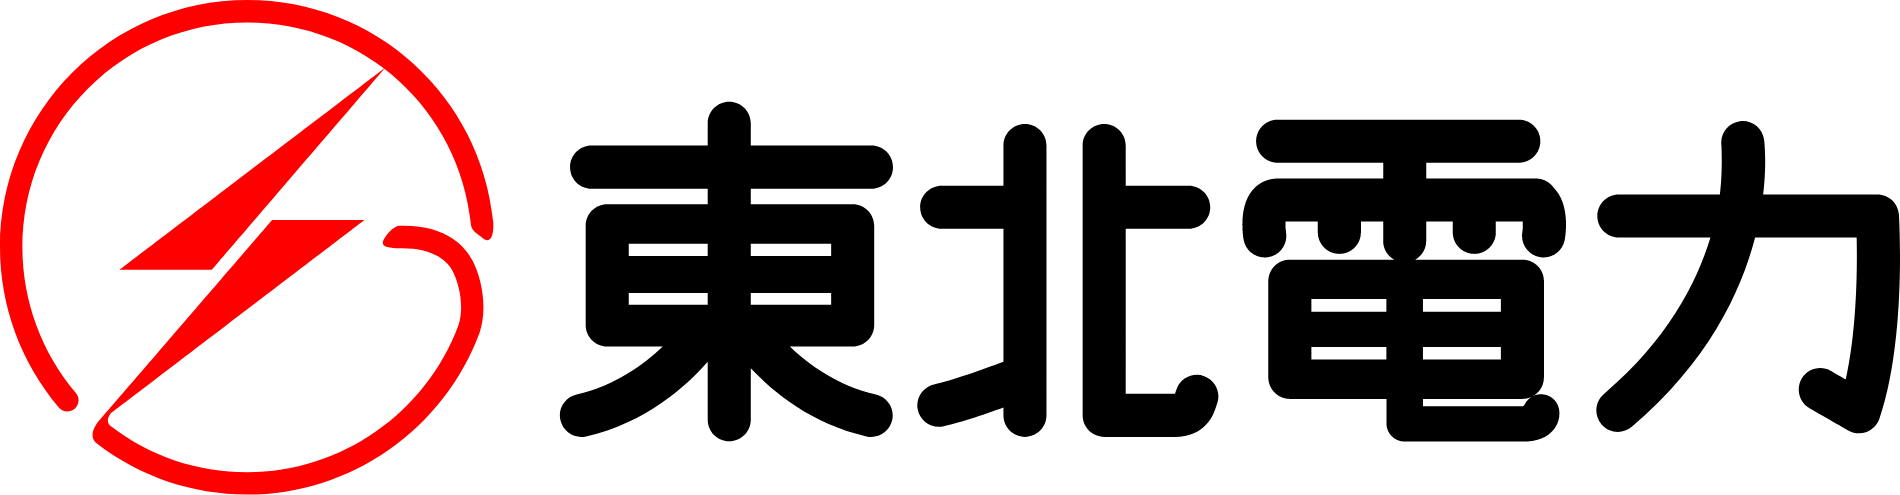 Tohoku Electric Power
 logo large (transparent PNG)